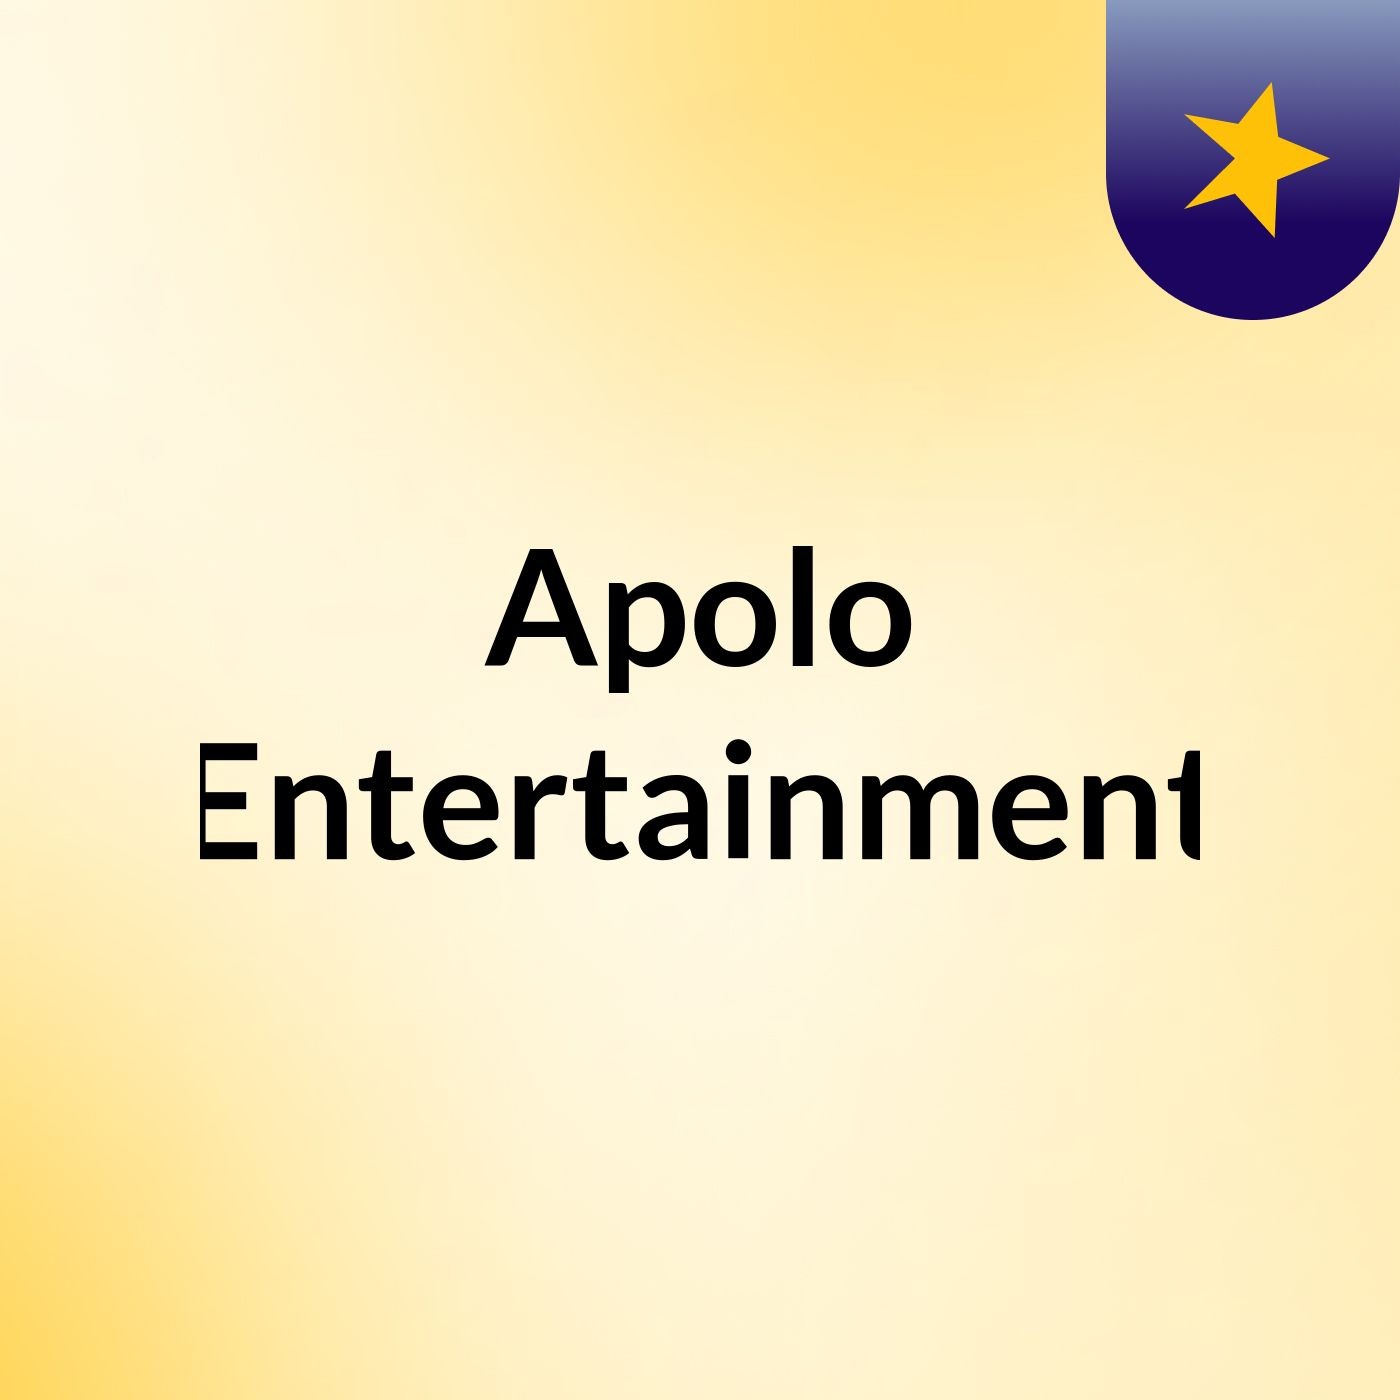 Apolo Entertainment